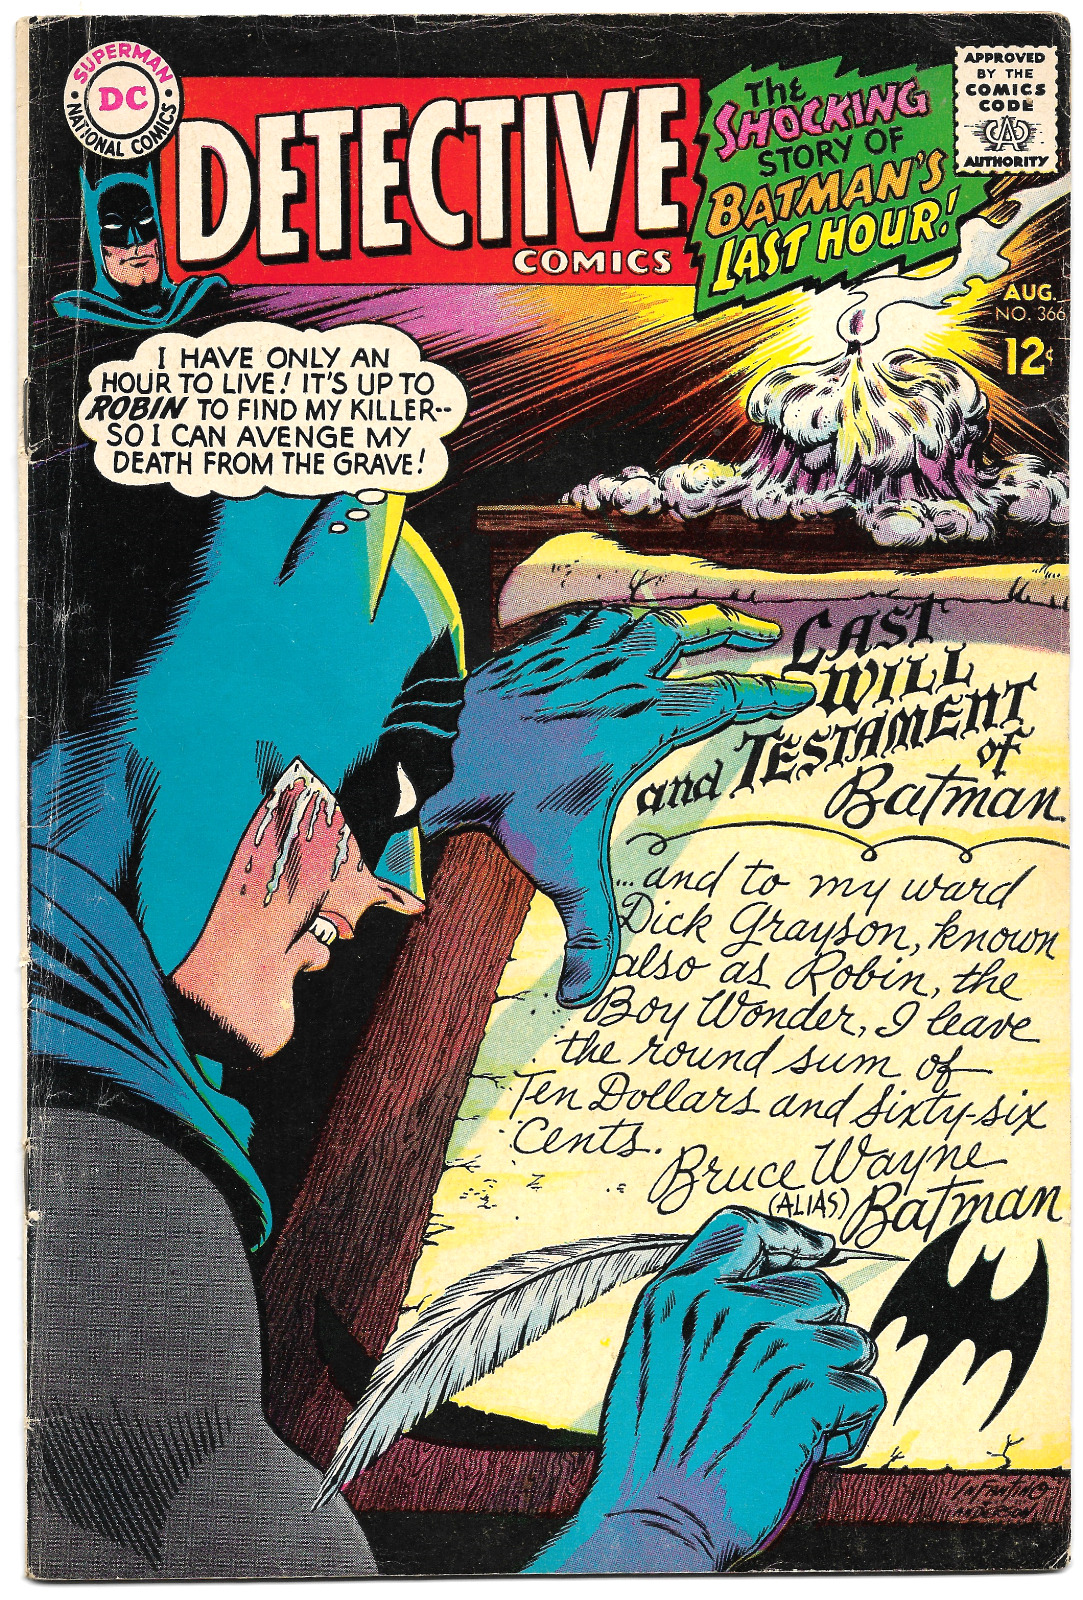 Detective Comics #366 